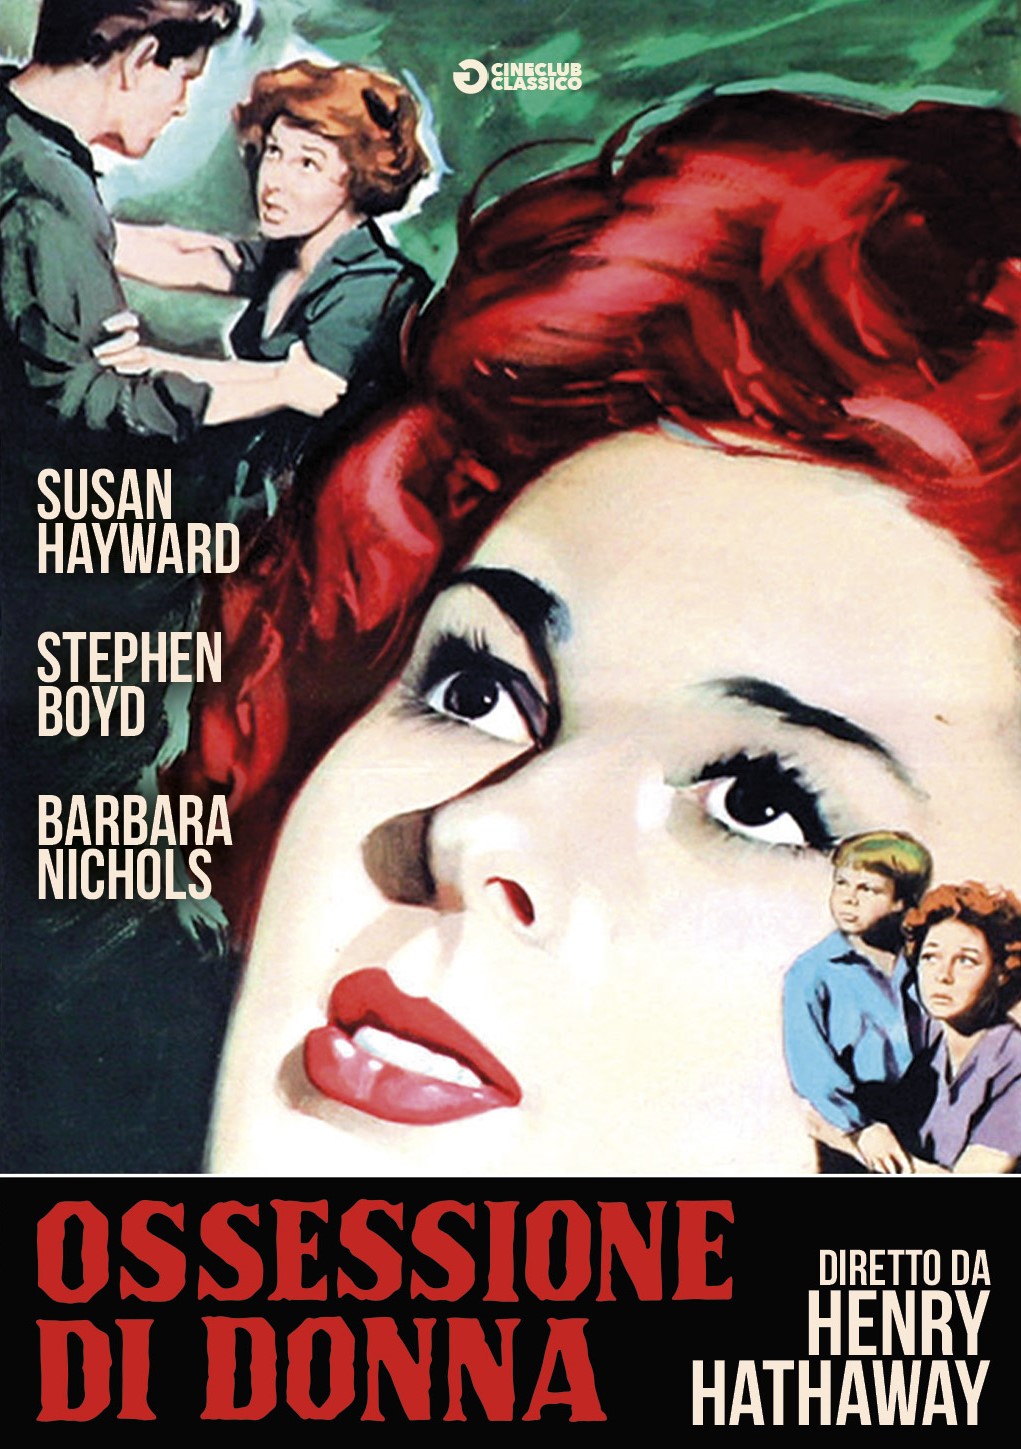 Ossessione di donna (1959)